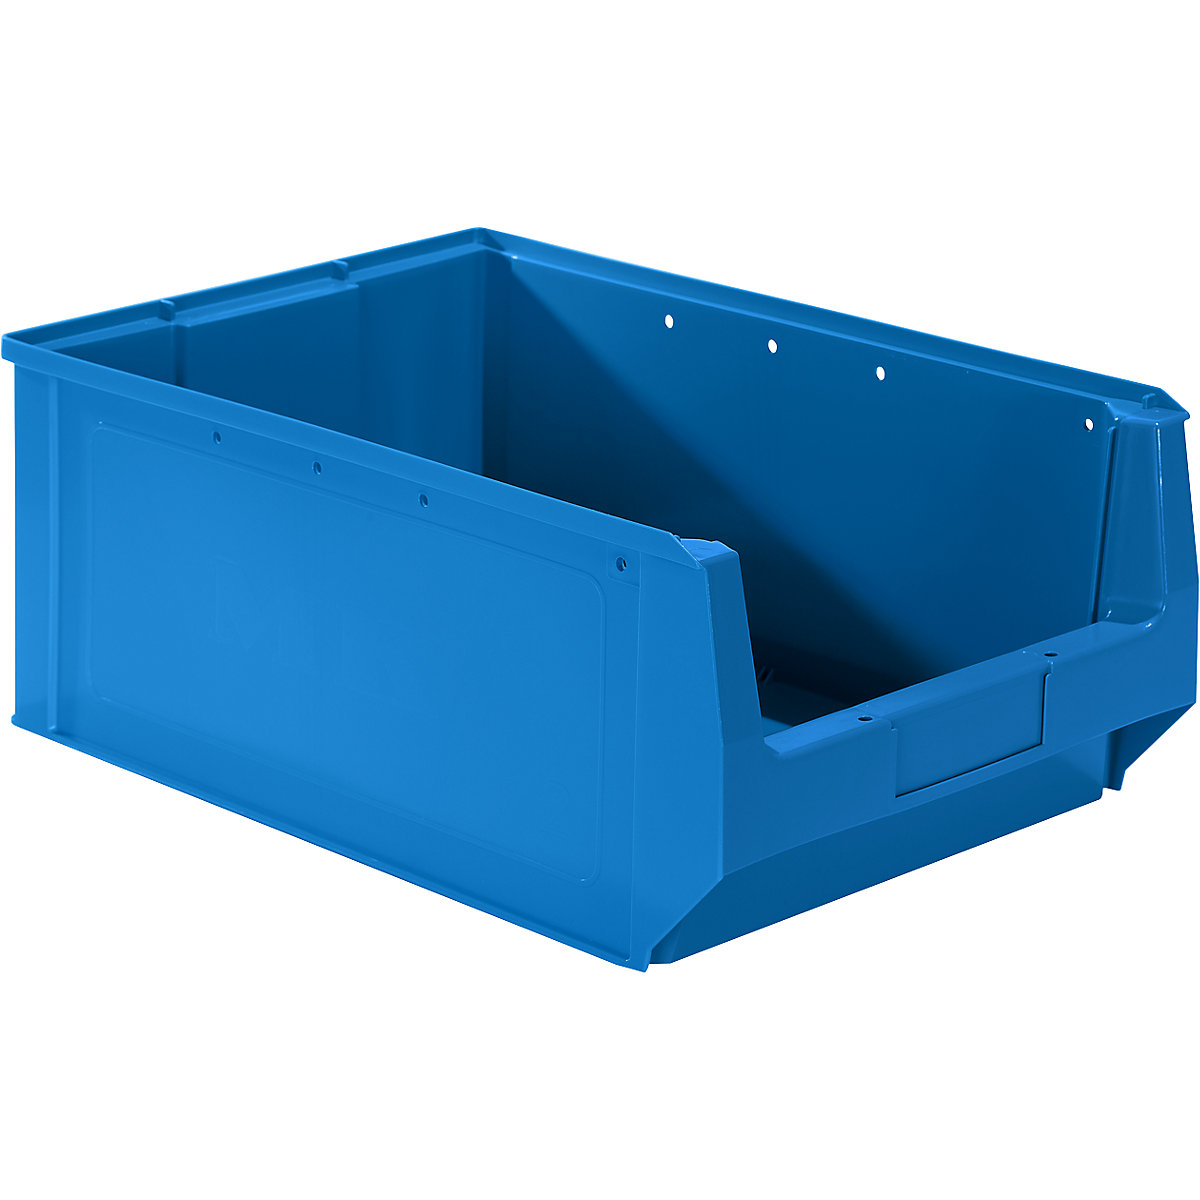 Odprta skladiščna posoda iz polietilena – mauser, DxŠxV 500 x 310 x 200 mm, modra, DE 10 kosov-7